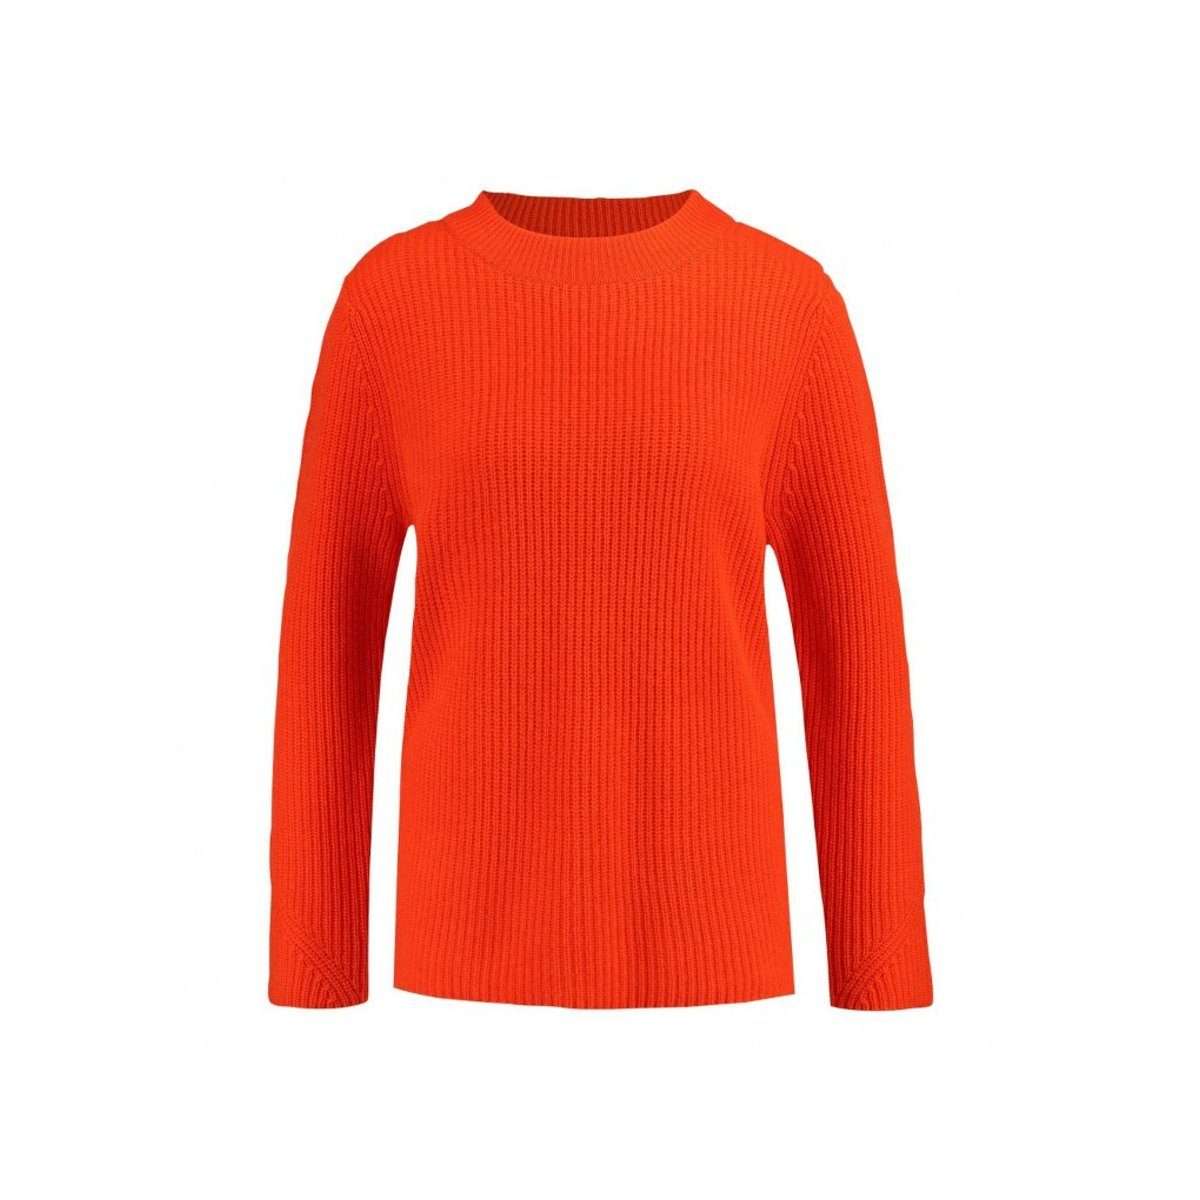 Длинный свитер оранжевый (1 шт.)